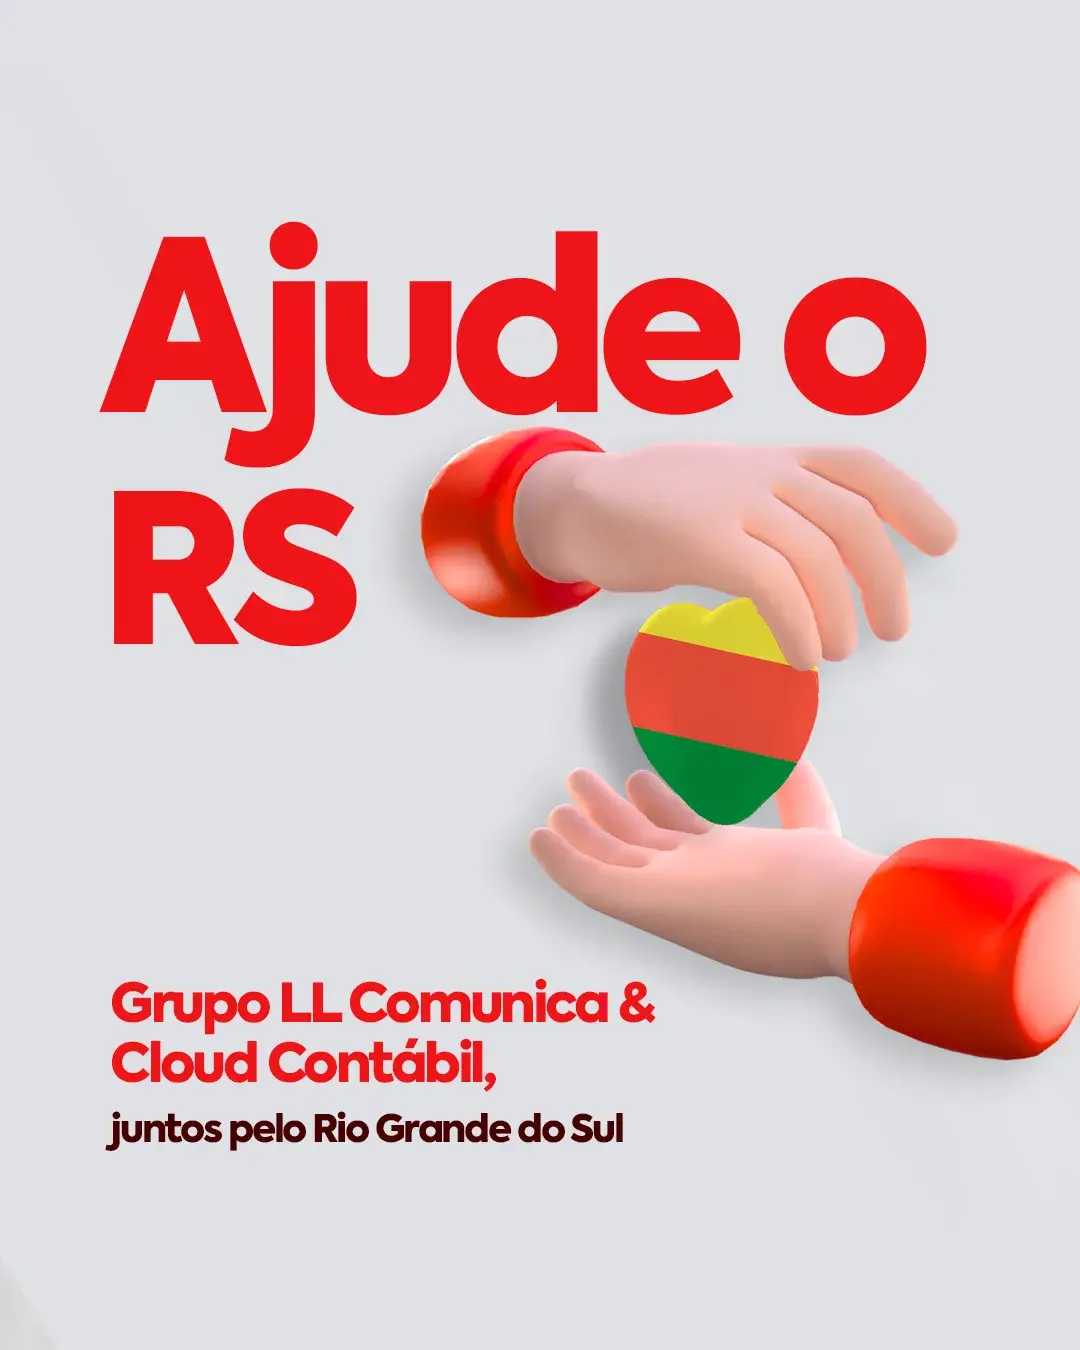 RIO GRANDE DO SUL: Grupo LL Comunica e Cloud Contábil promovem campanha de arrecadação de doações em BH